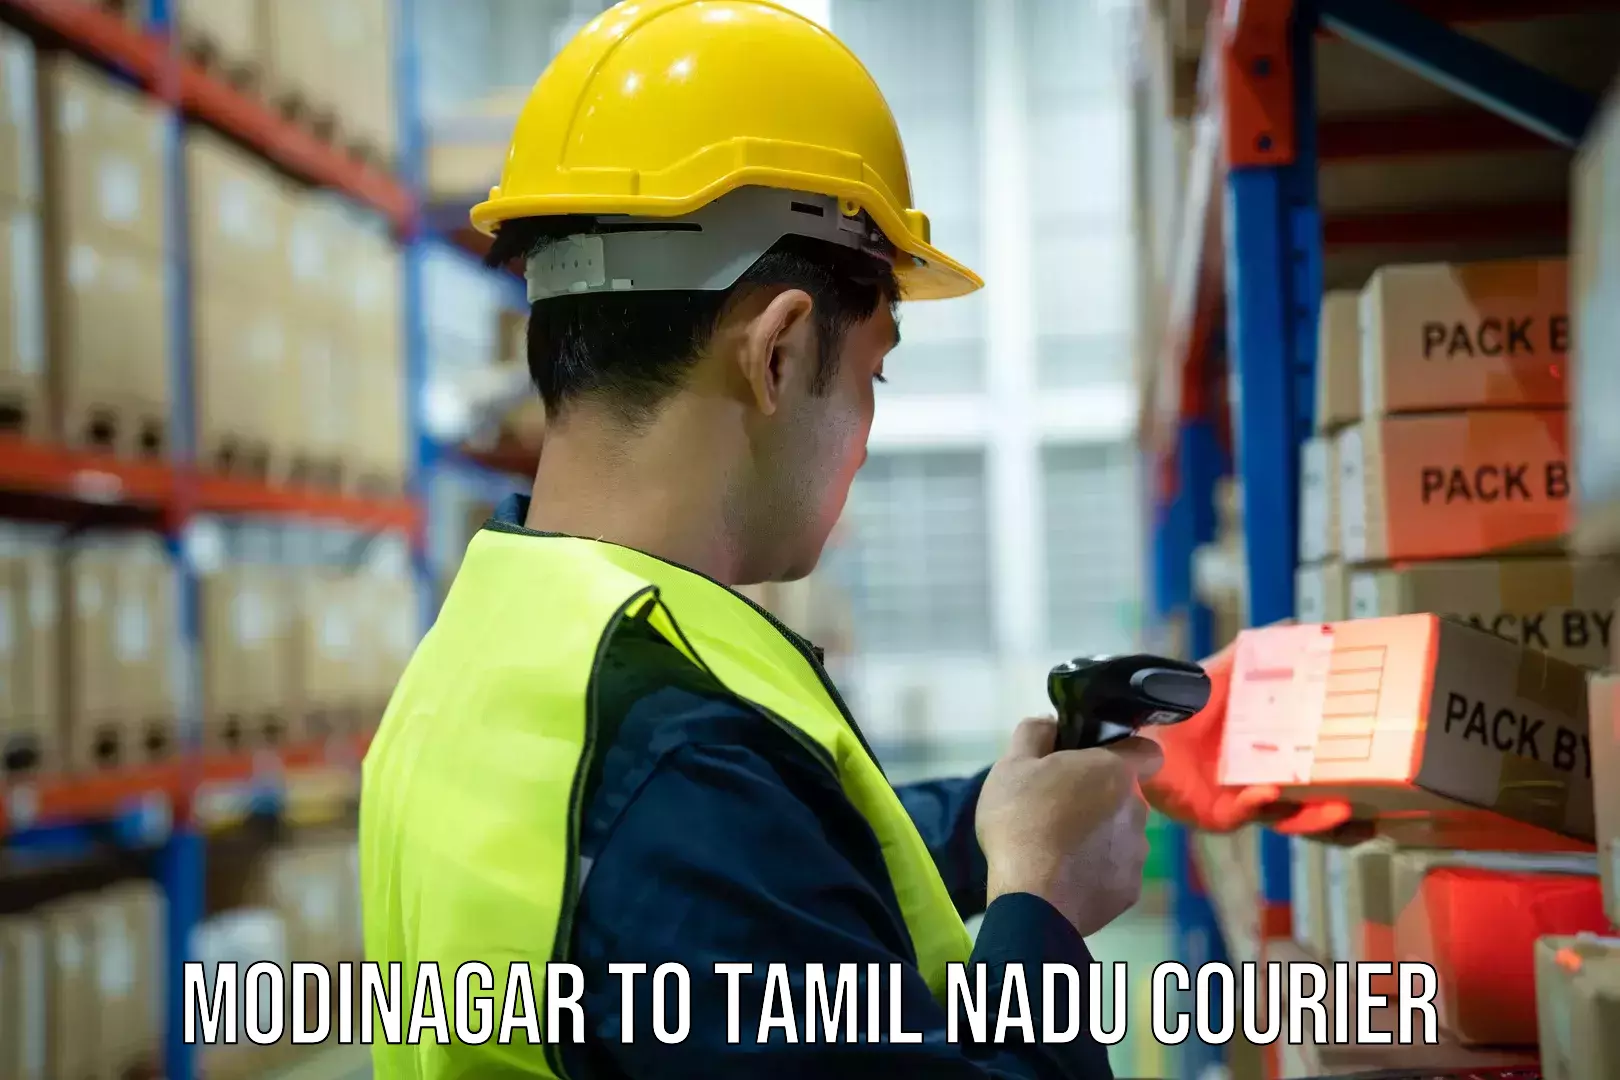 Cash on delivery service Modinagar to Tamil Nadu